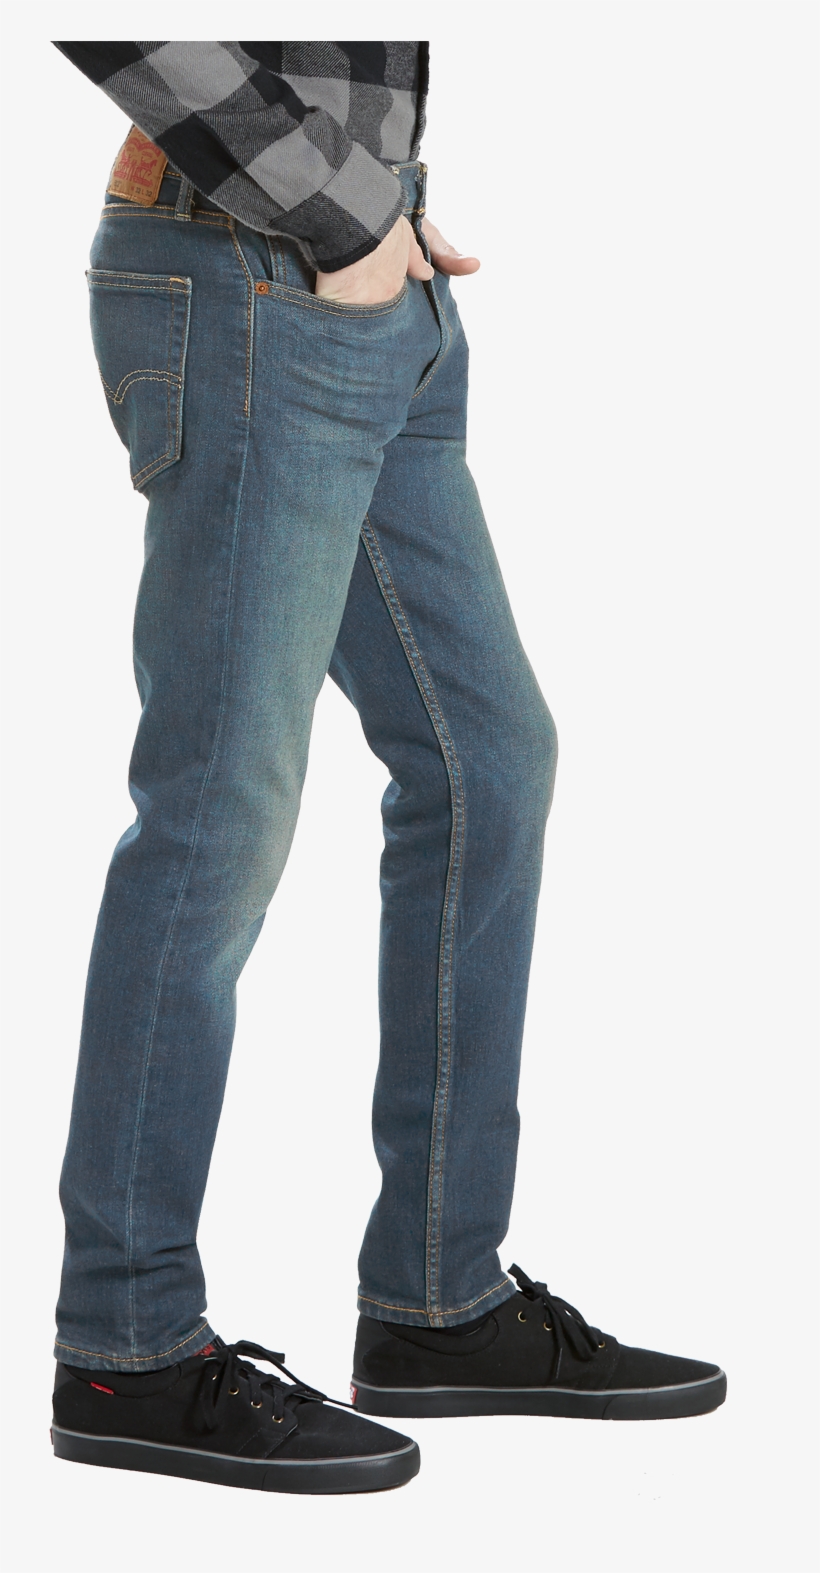 Levi's 512 Jeans Ludlow Side - Men's 512 Slim Taper Fit Jeans Ludlow, transparent png #5334715